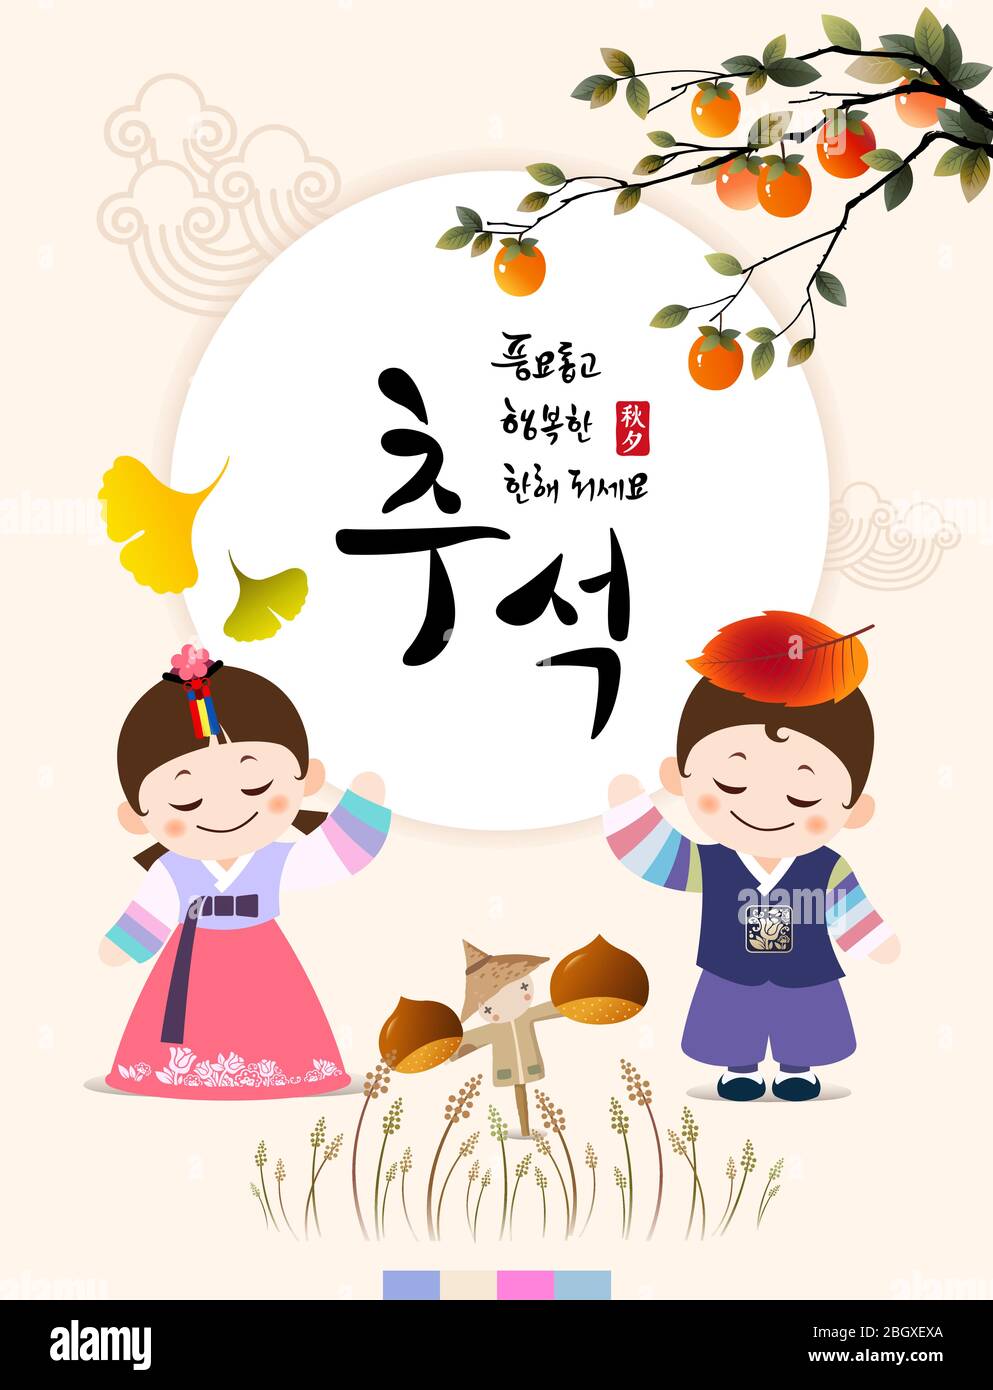 Récolte riche et heureux Chuseok, Hangawi, traduction coréenne. Le personnage traditionnel coréen des enfants et la pleine lune. Illustration de Vecteur